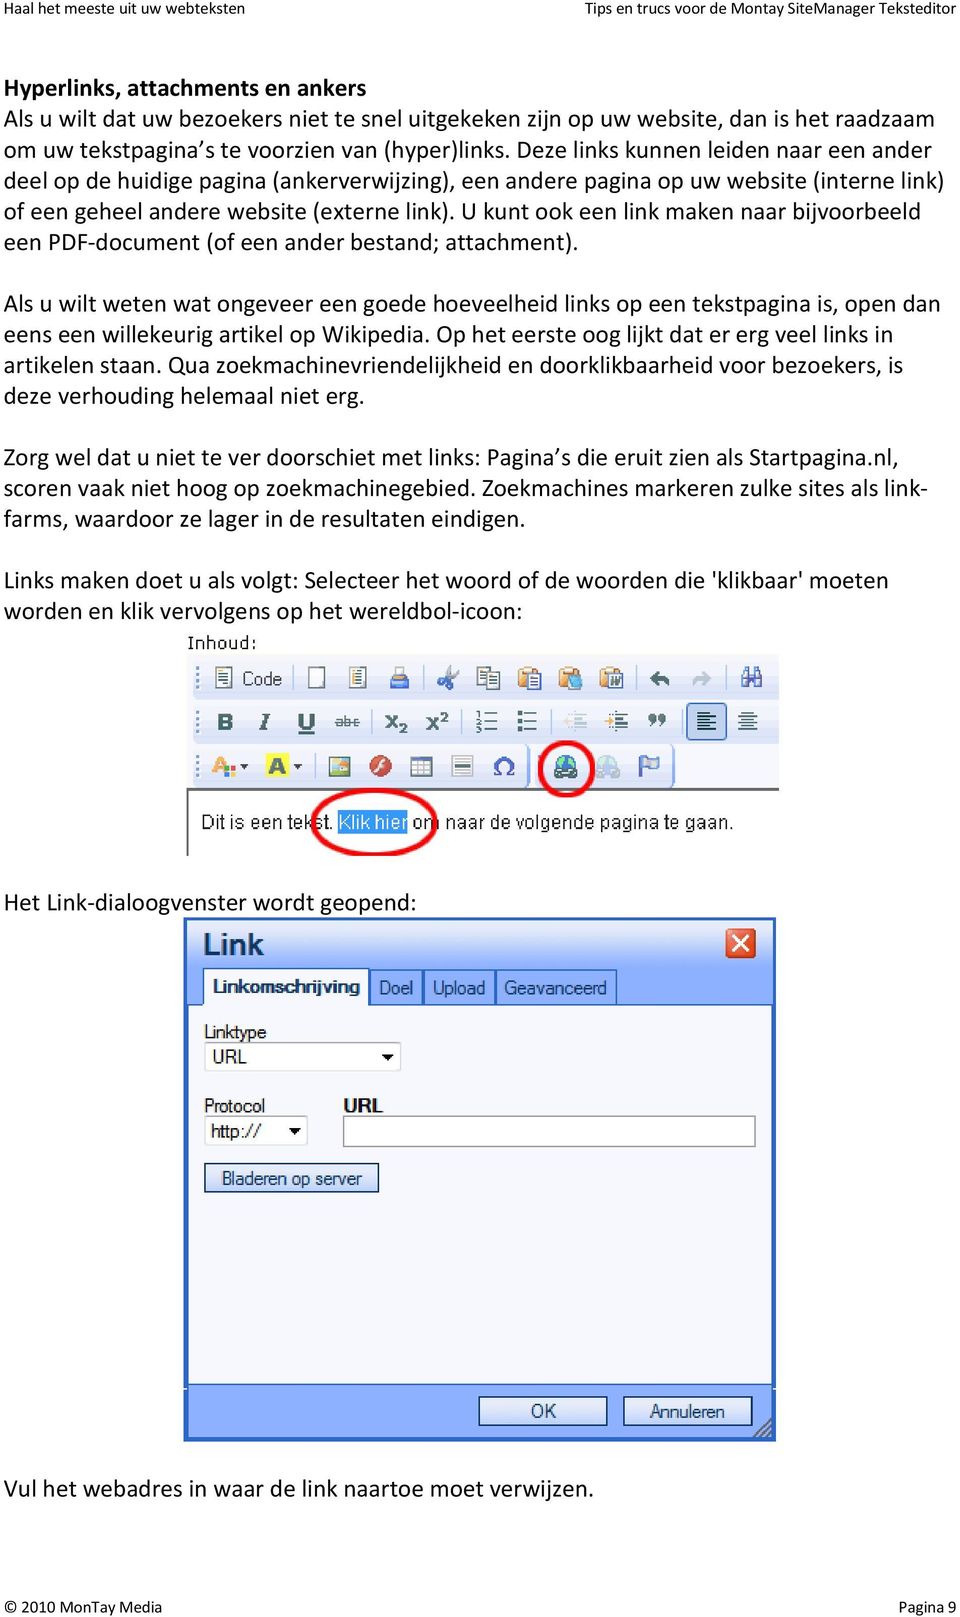 U kunt ook een link maken naar bijvoorbeeld een PDF-document (of een ander bestand; attachment).